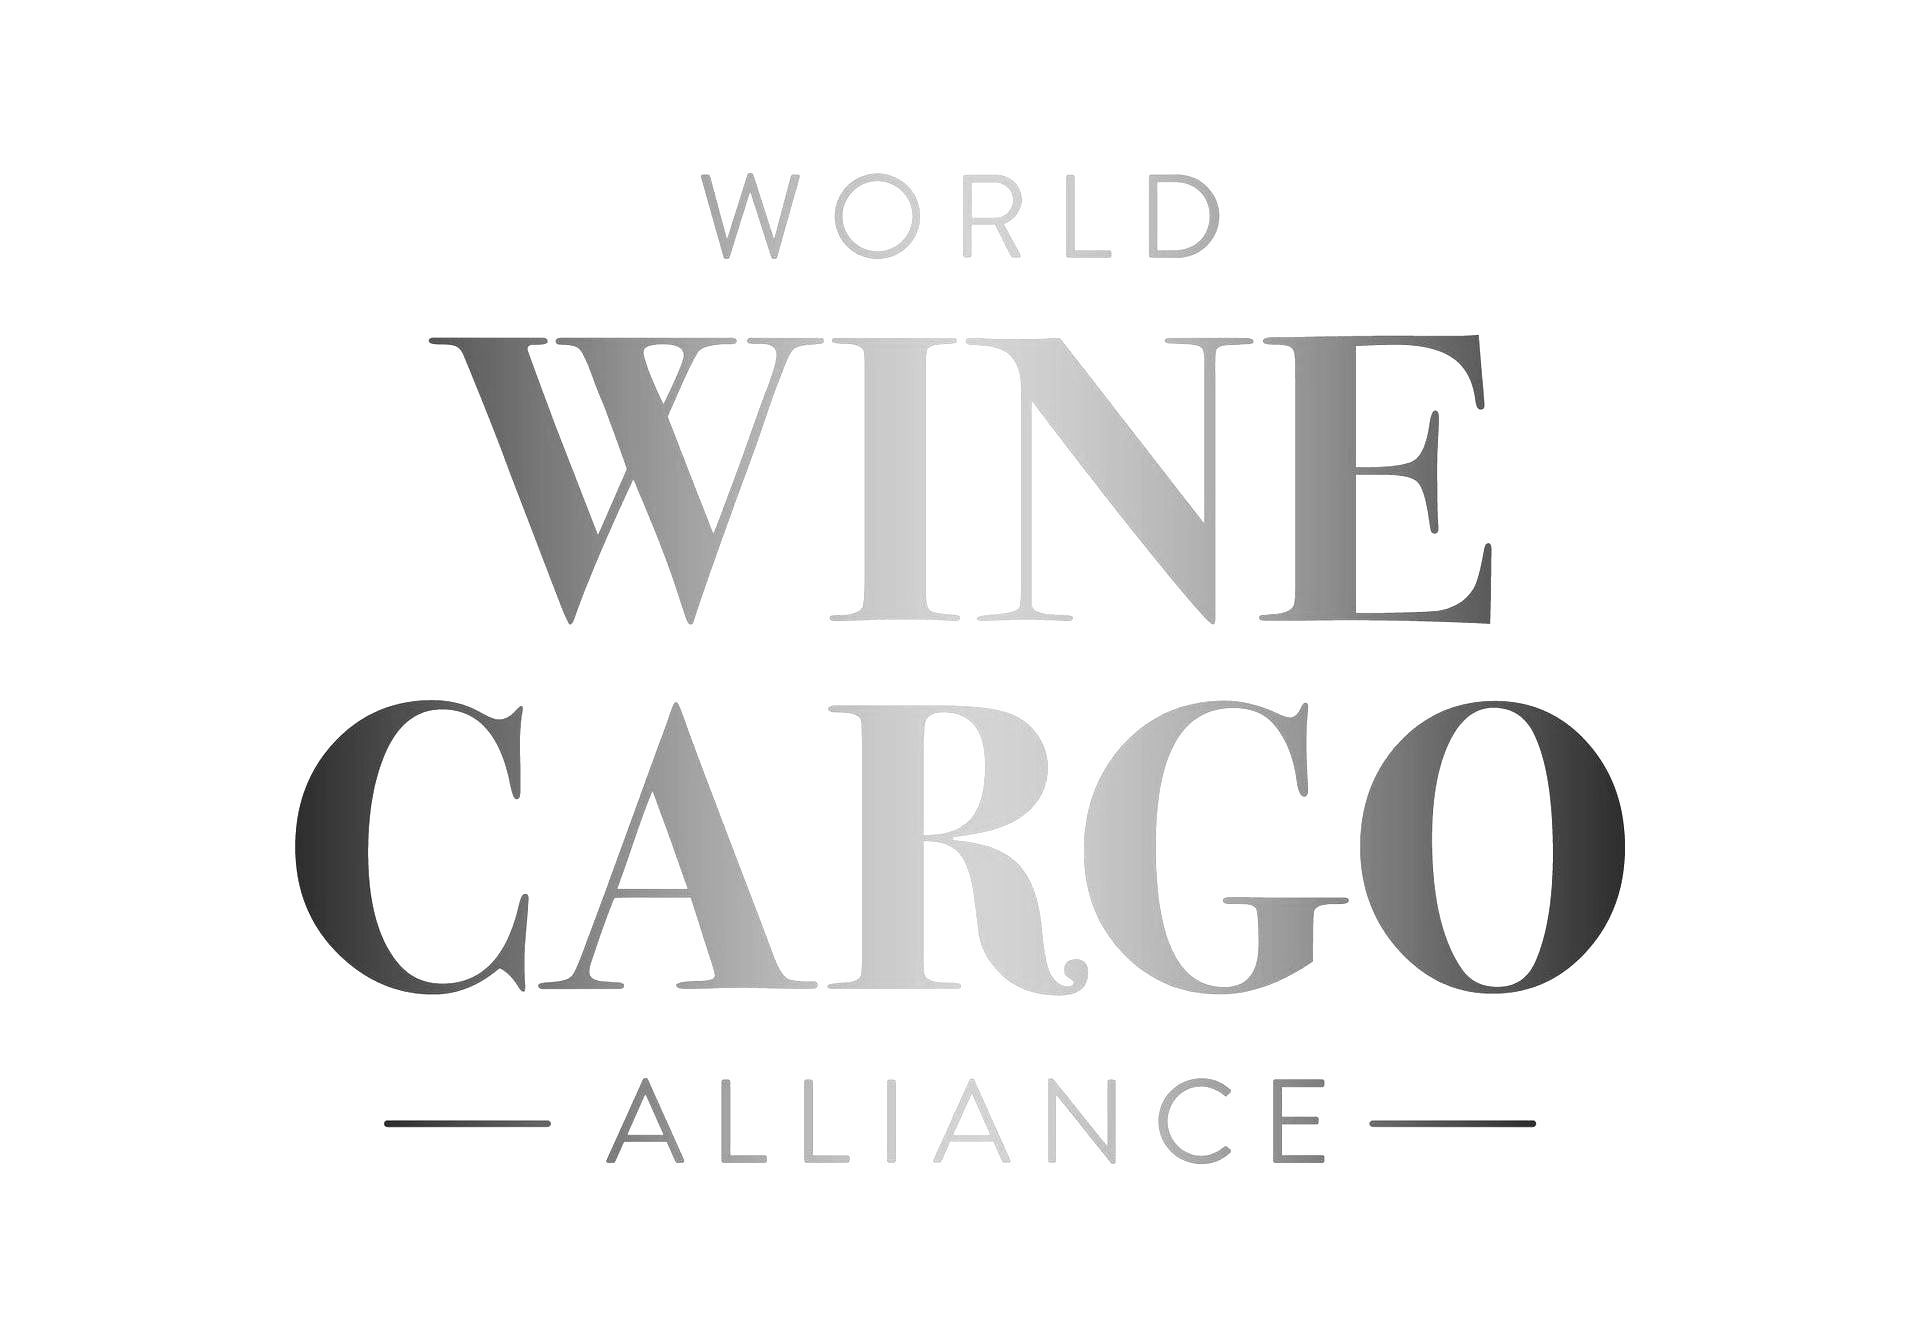 World Wine Cargo